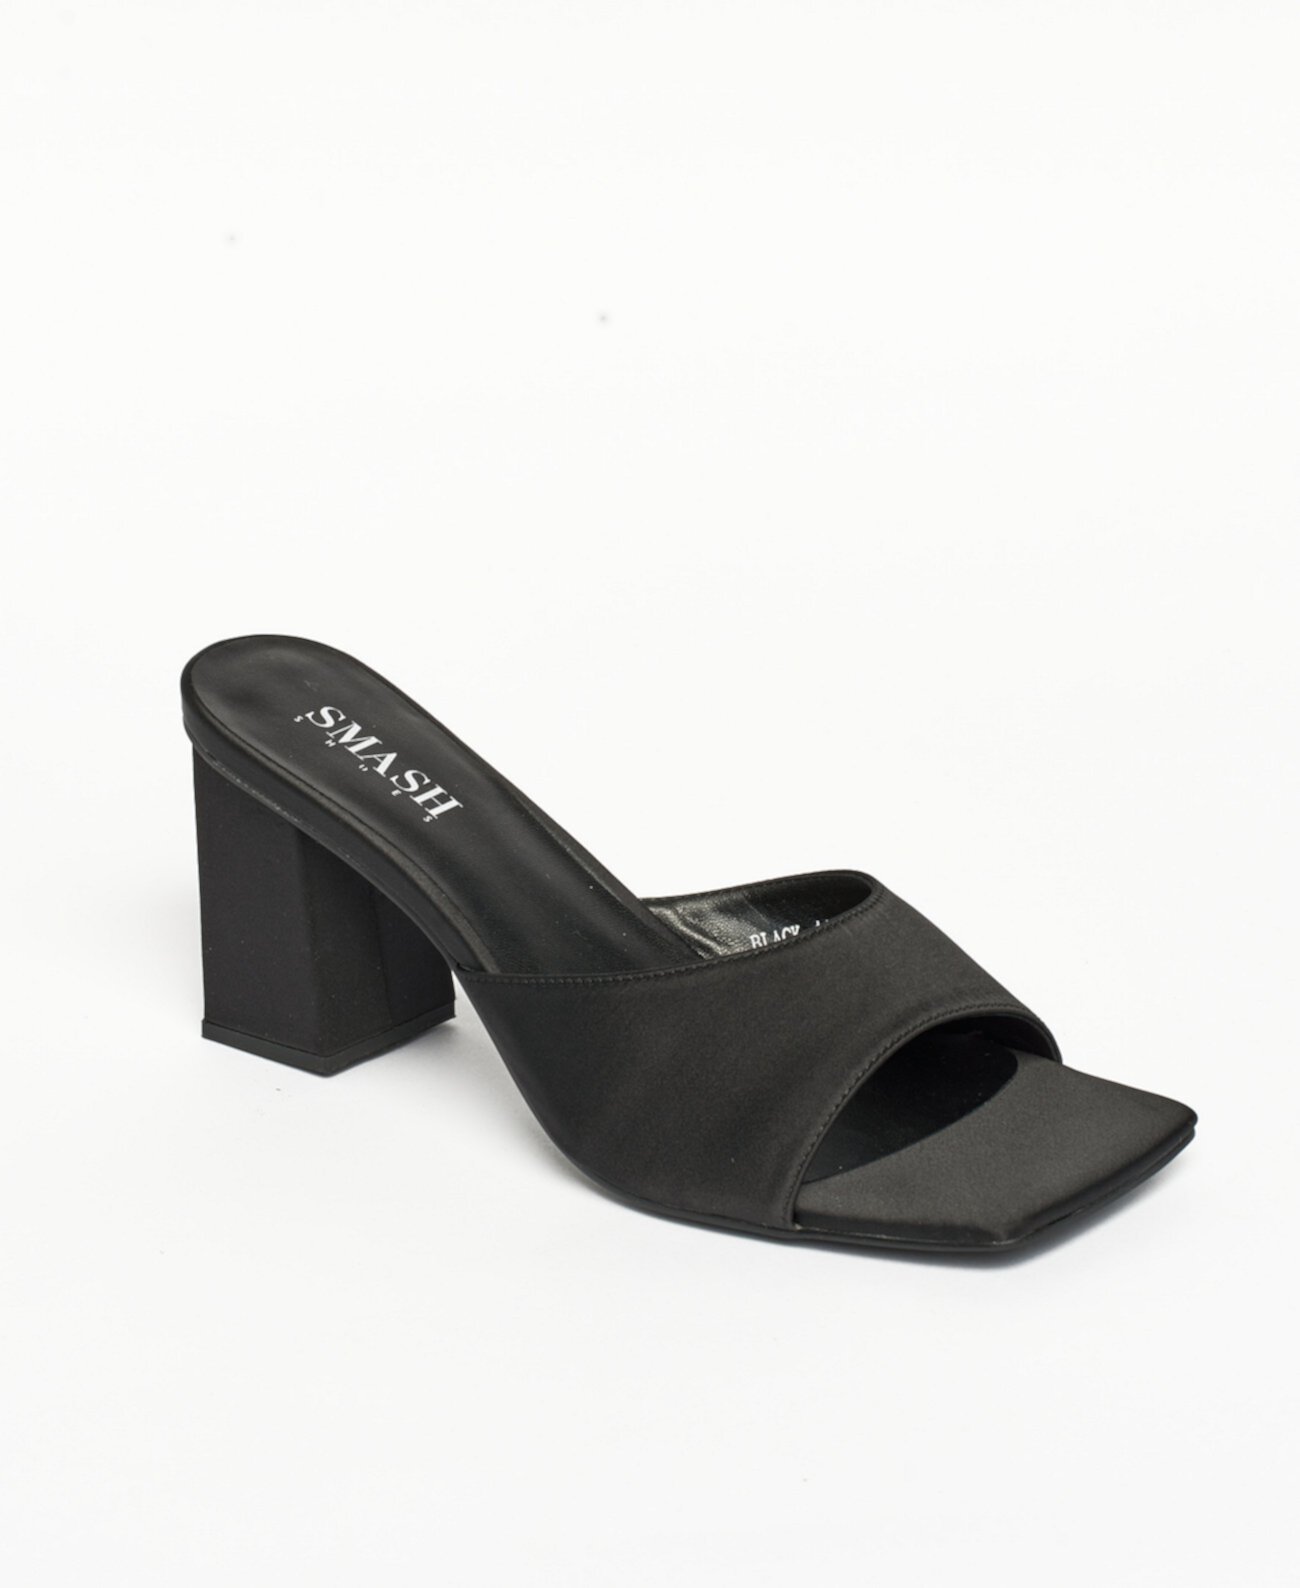 Женские босоножки без задника Jennifer Block Heels - увеличенные размеры 10–14 SMASH Shoes